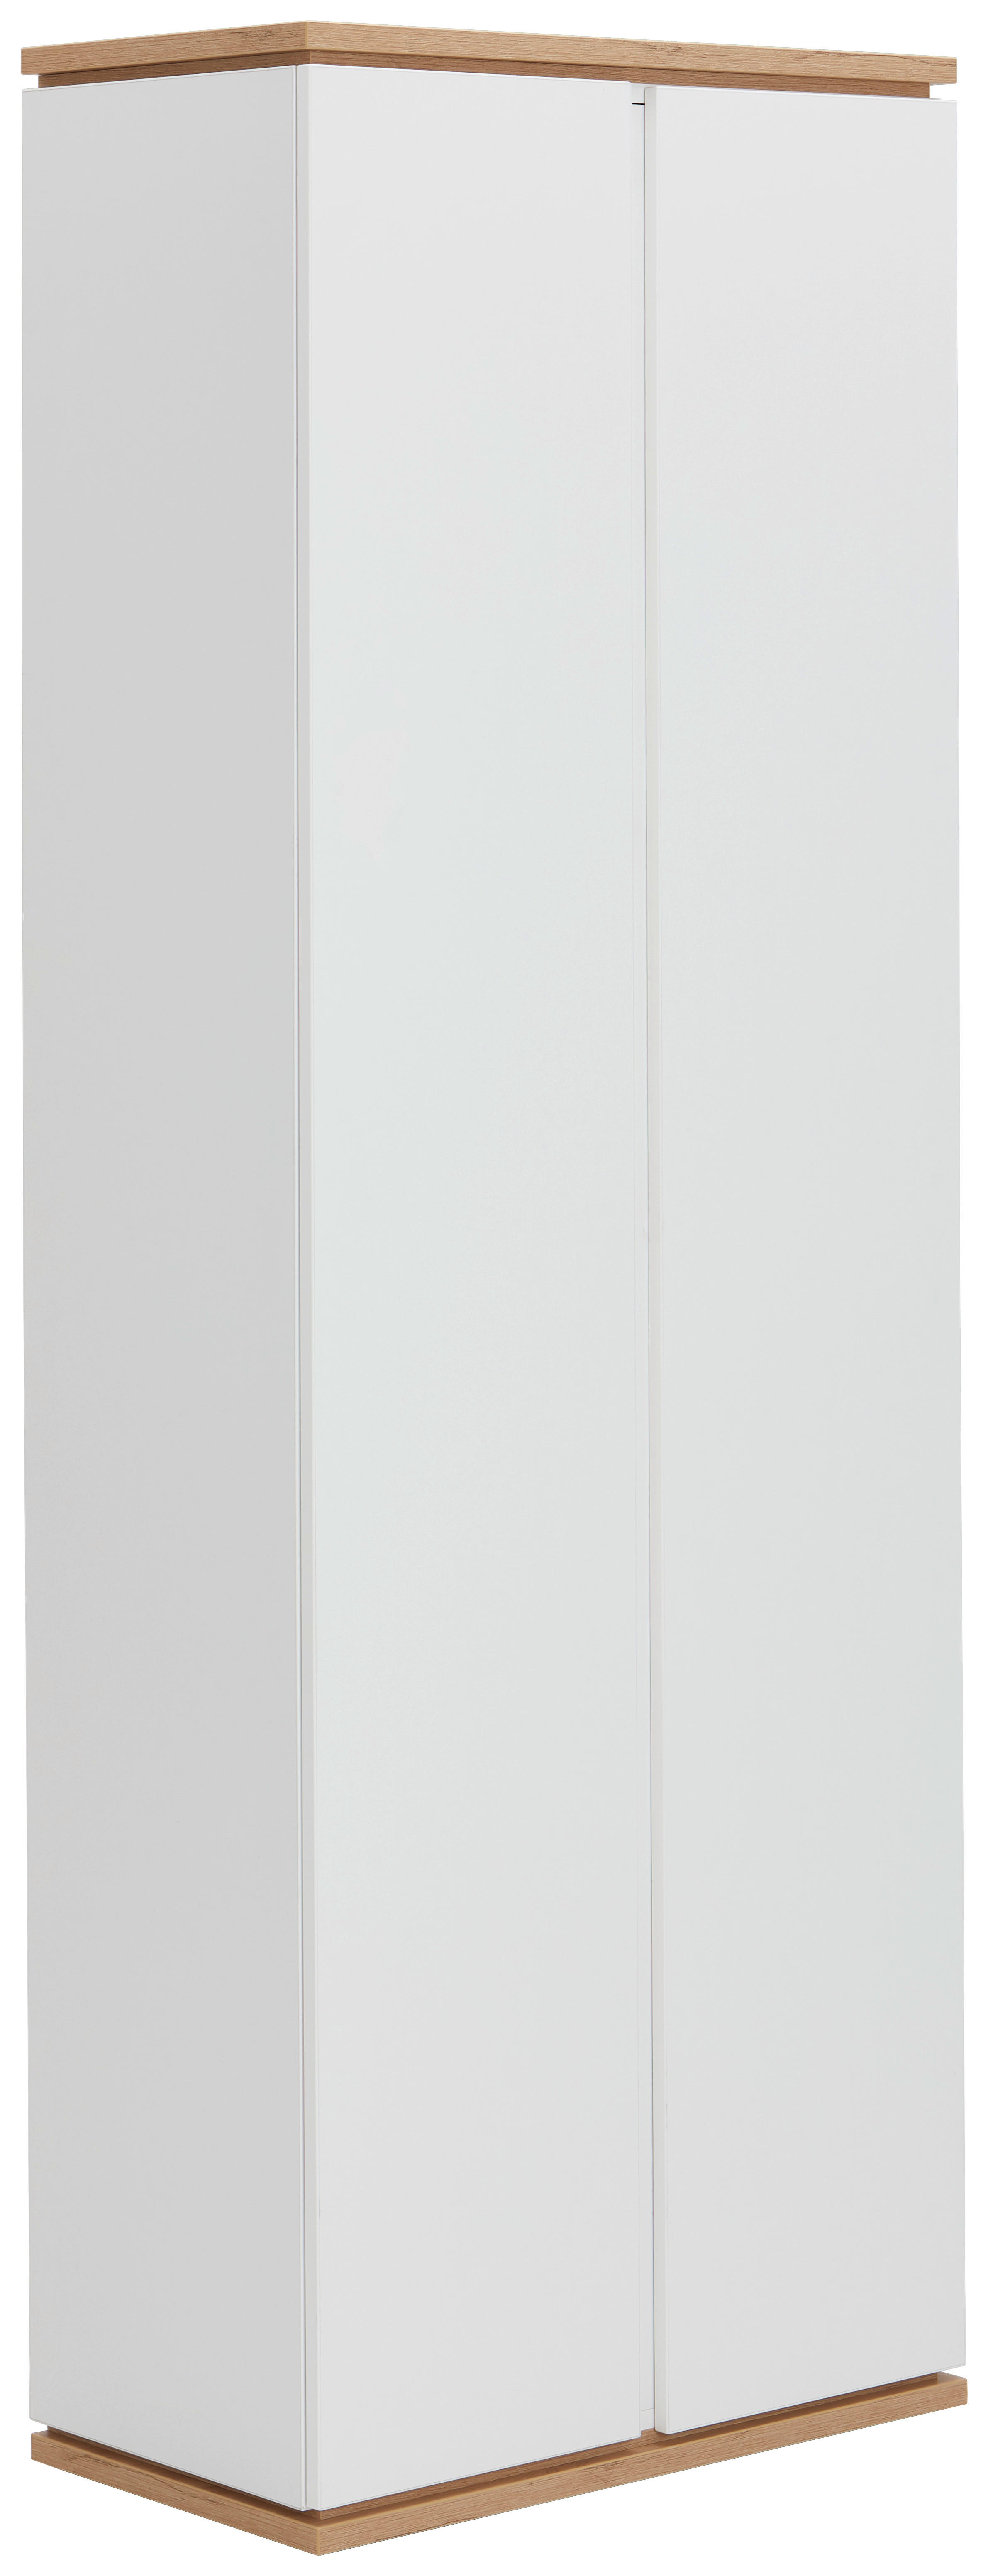 GARDEROBENSCHRANK 70/200/37,8 cm  - Schwarz/Weiß, Design, Holzwerkstoff/Kunststoff (70/200/37,8cm) - Xora